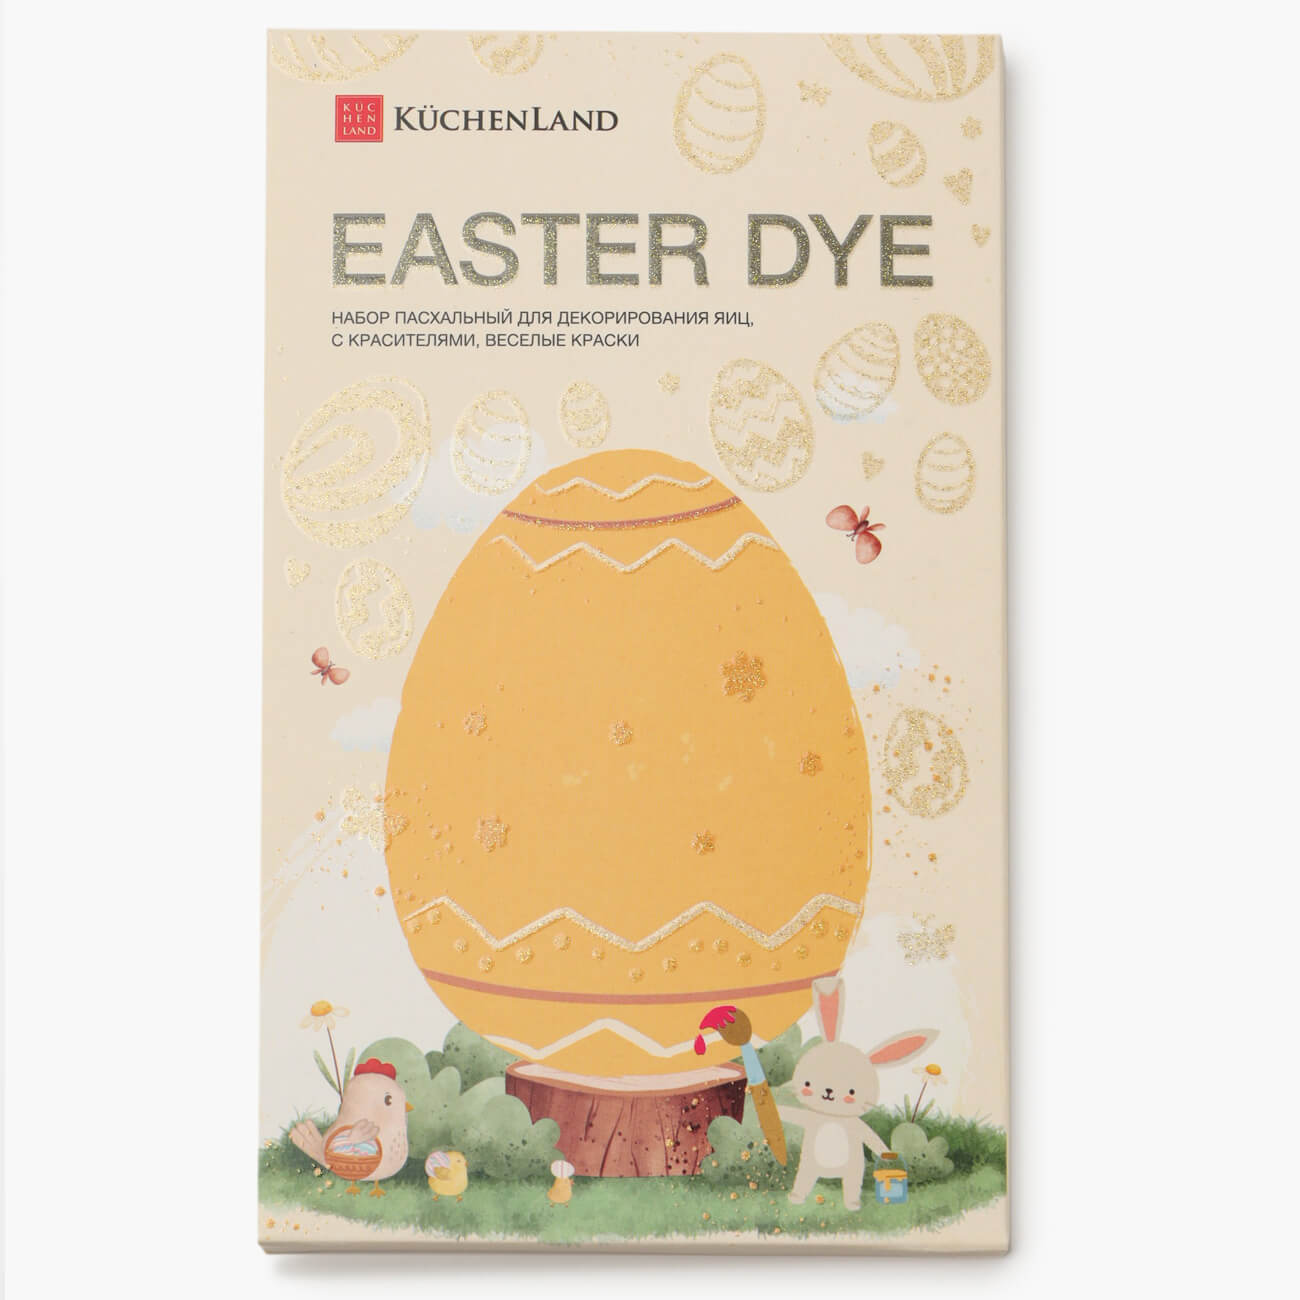 Набор пасхальный для декорирования яиц, 7 цветов/13 пр, Веселые краски, Easter dye набор для декорирования береза